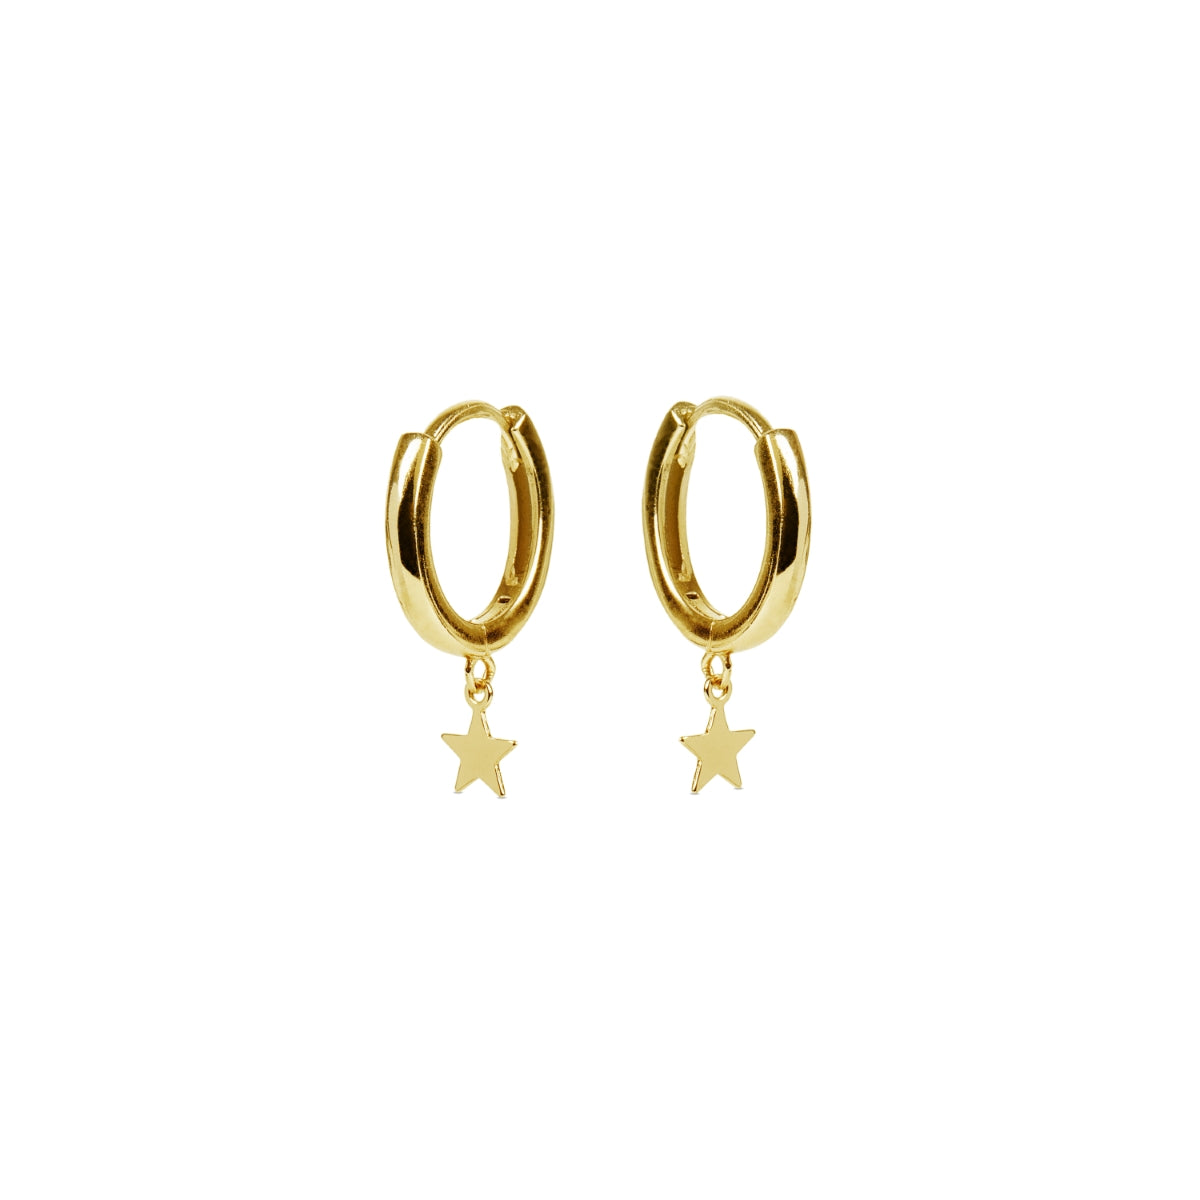 925 Sterling Silver Star Earrings